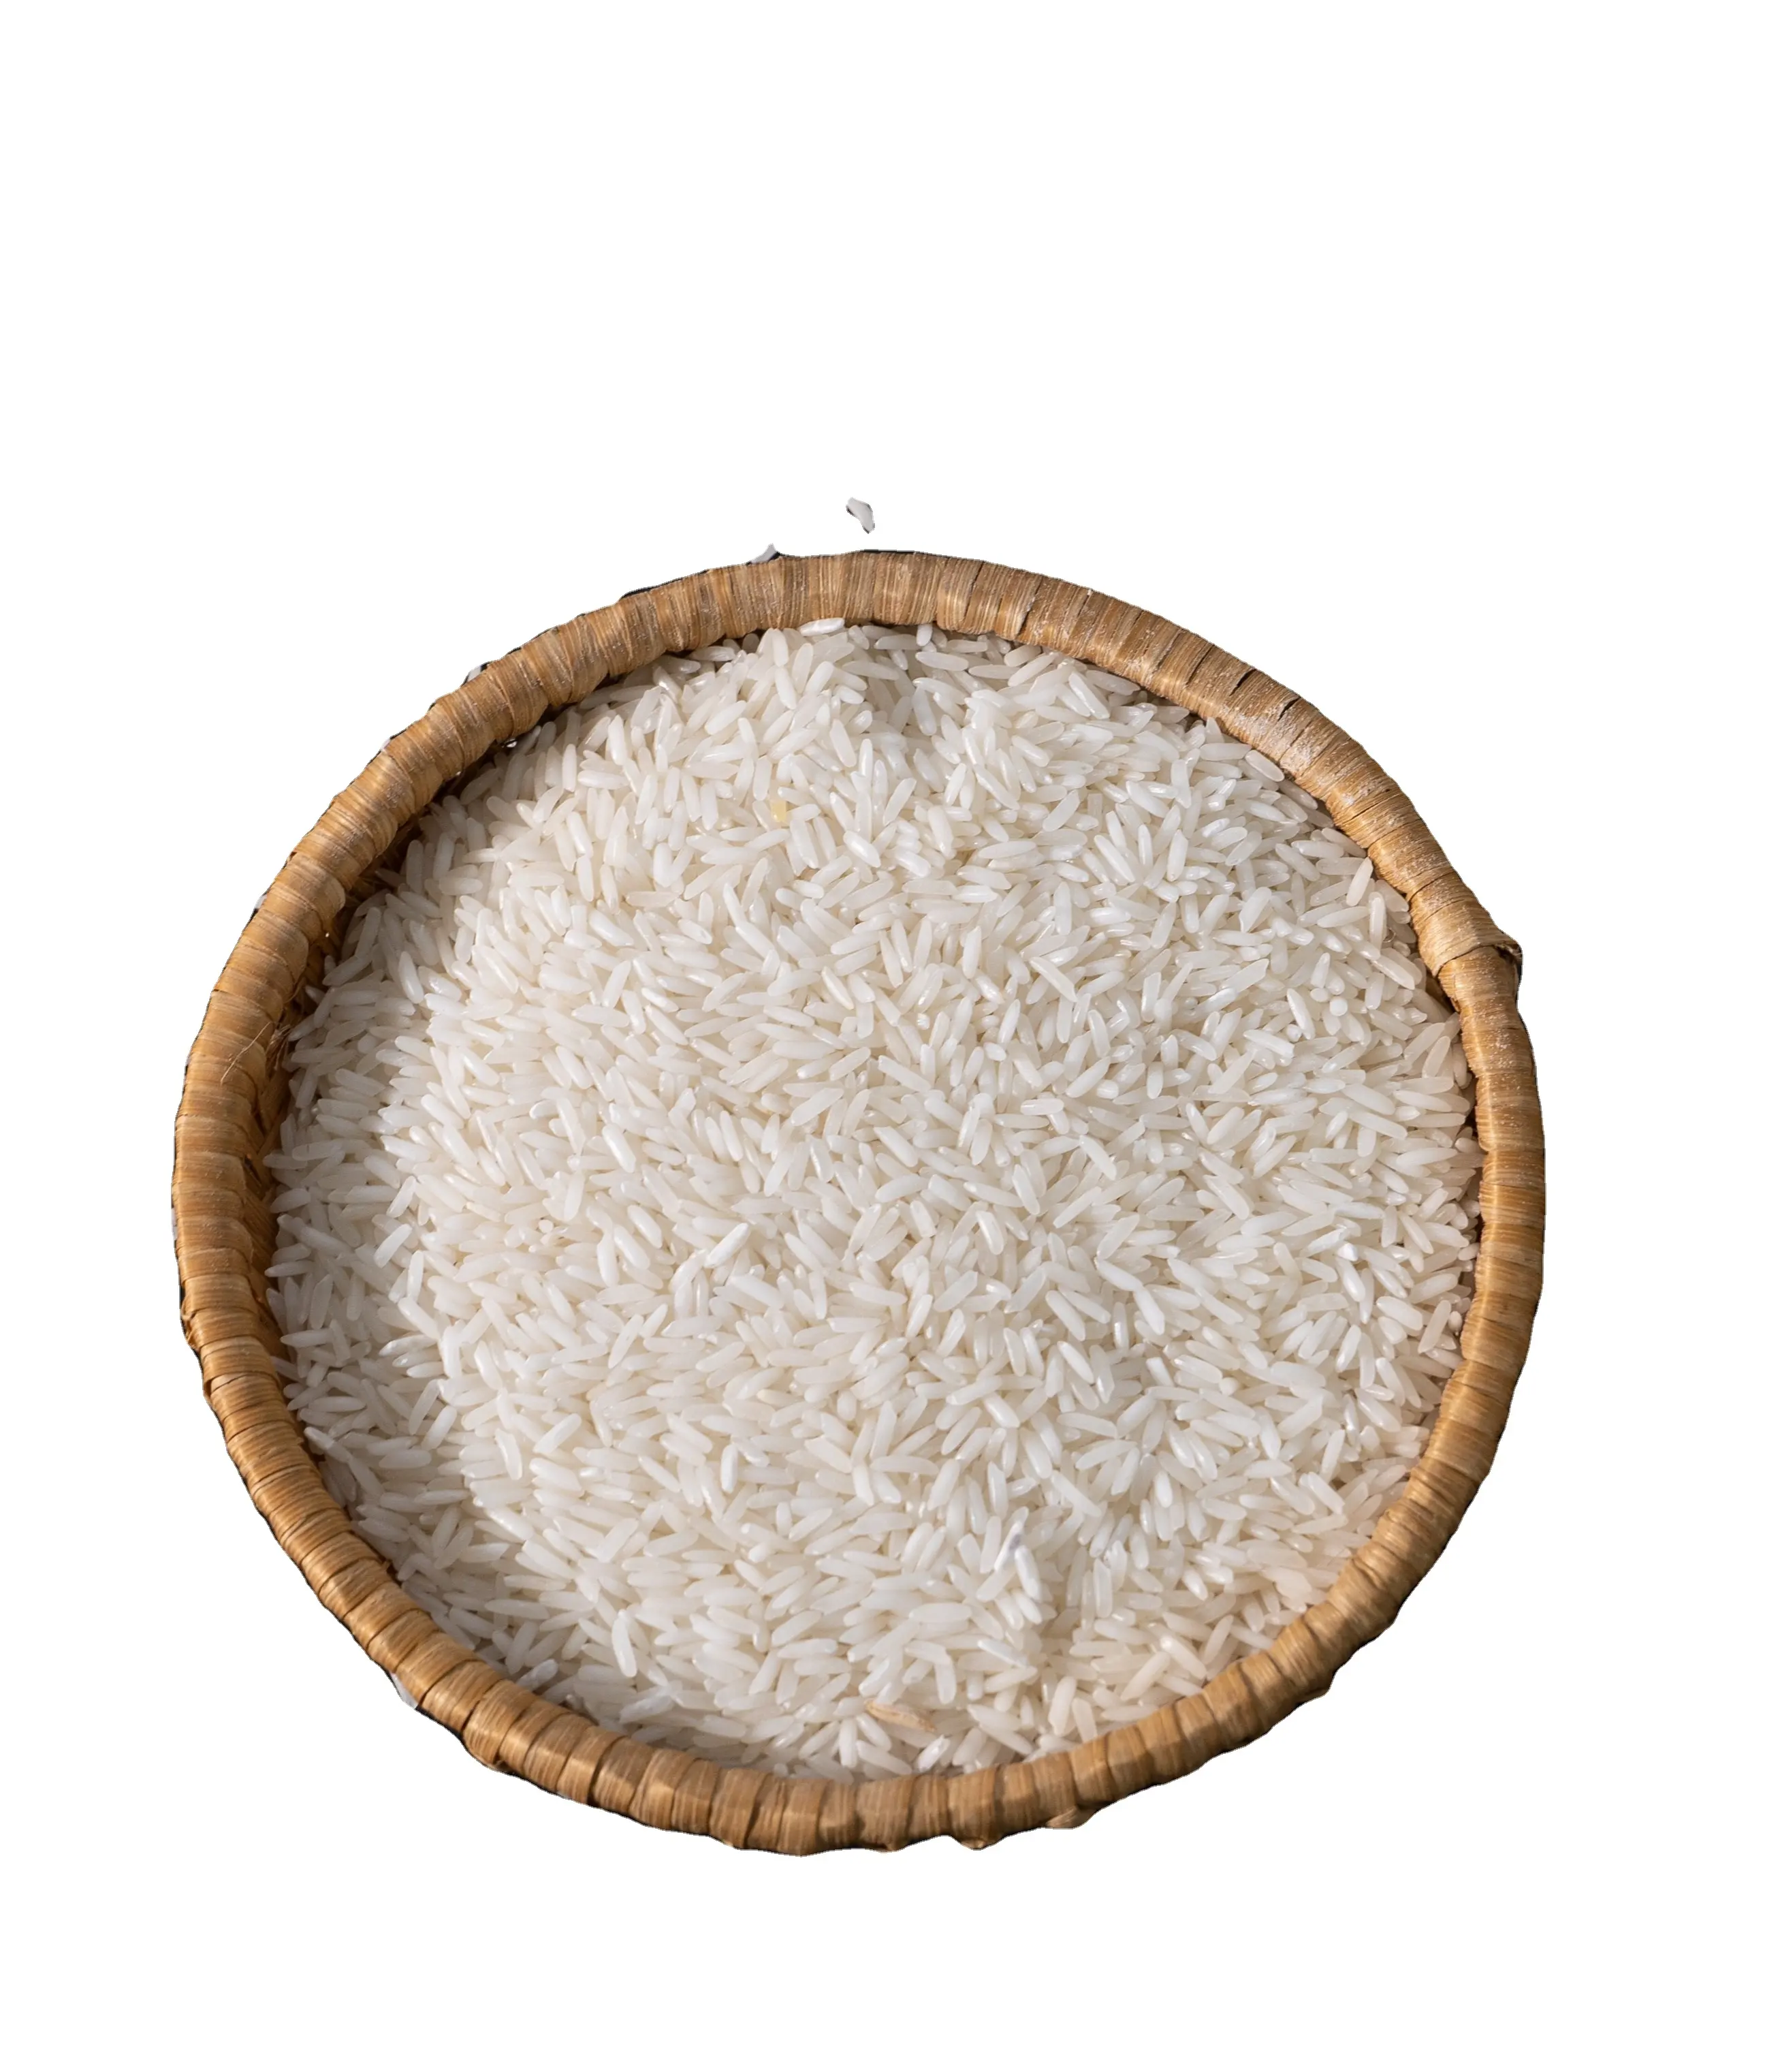 Premium süper kalite Japonica Vietnam pirinç japonya pirinç yuvarlak tahıl beyaz pirinç ihracat için ucuz fiyat